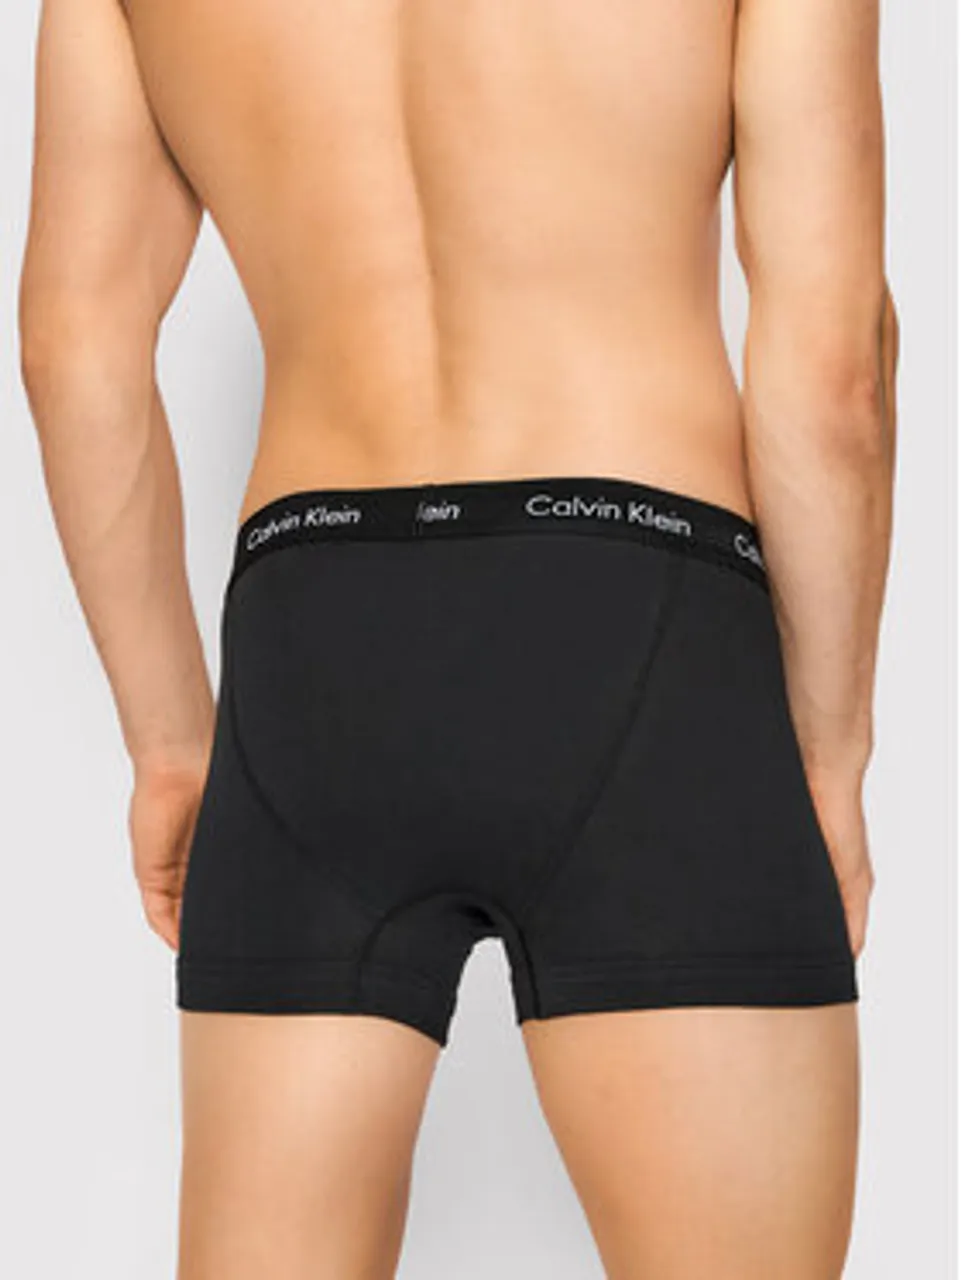 Calvin Klein Underwear 3er-Set Boxershorts 0000U2662G Schwarz